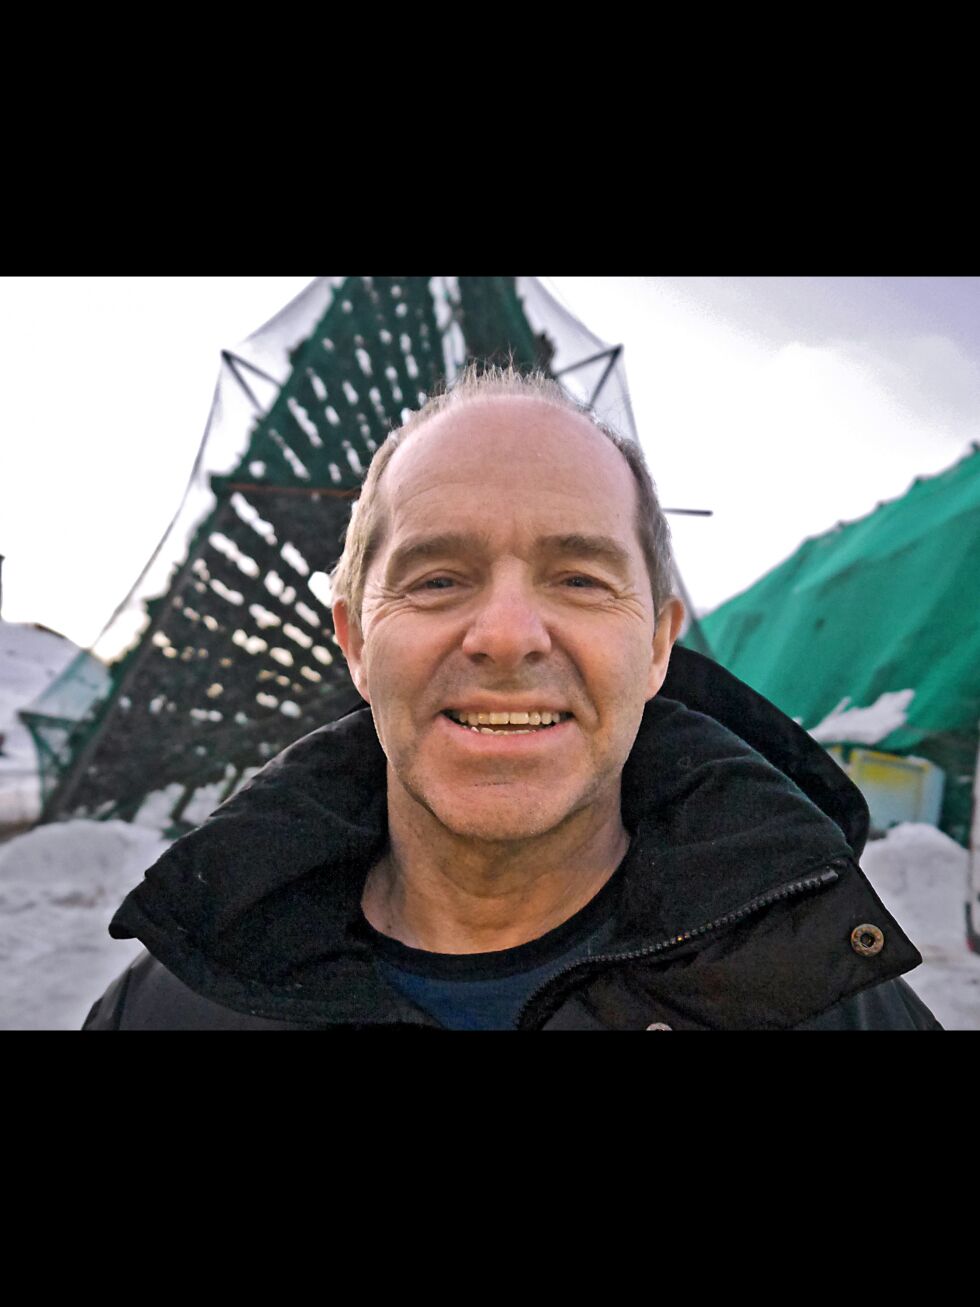 Daglig leder i Cape Fish Group AS, Bjørn Ronald Olsen, er godt vant til å henge fisk på hjell. Nå satser han også på hotelldrift og vinterturisme på Magerøya.
 Foto: Geir Johansen